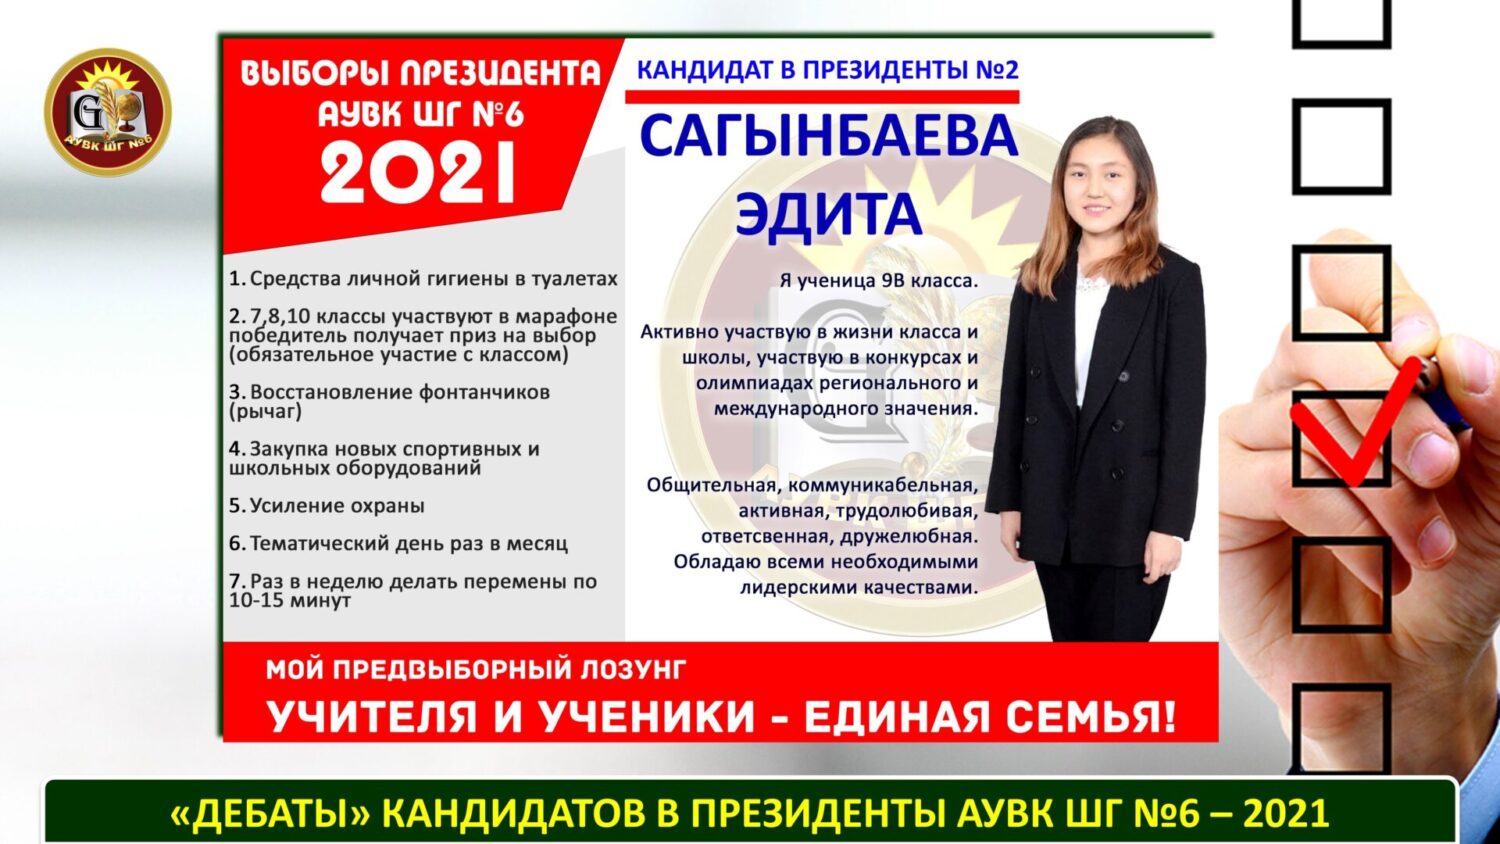 Выборы в белоруссии 2025. Дебаты президента школы. Выборы президента гимназии.